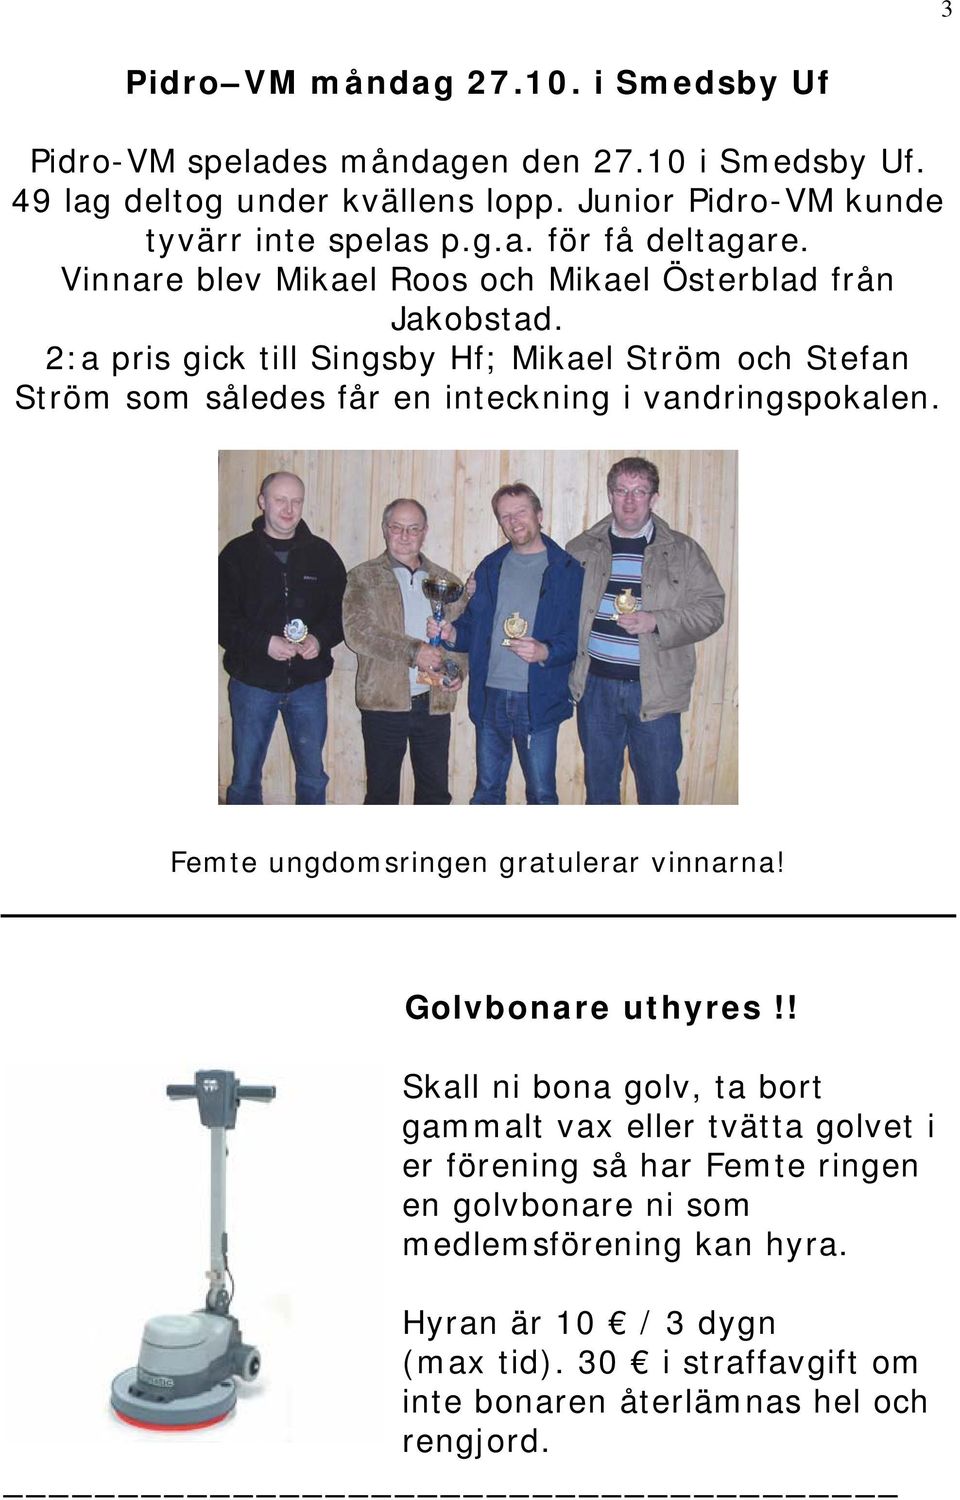 2:a pris gick till Singsby Hf; Mikael Ström och Stefan Ström som således får en inteckning i vandringspokalen. Femte ungdomsringen gratulerar vinnarna!